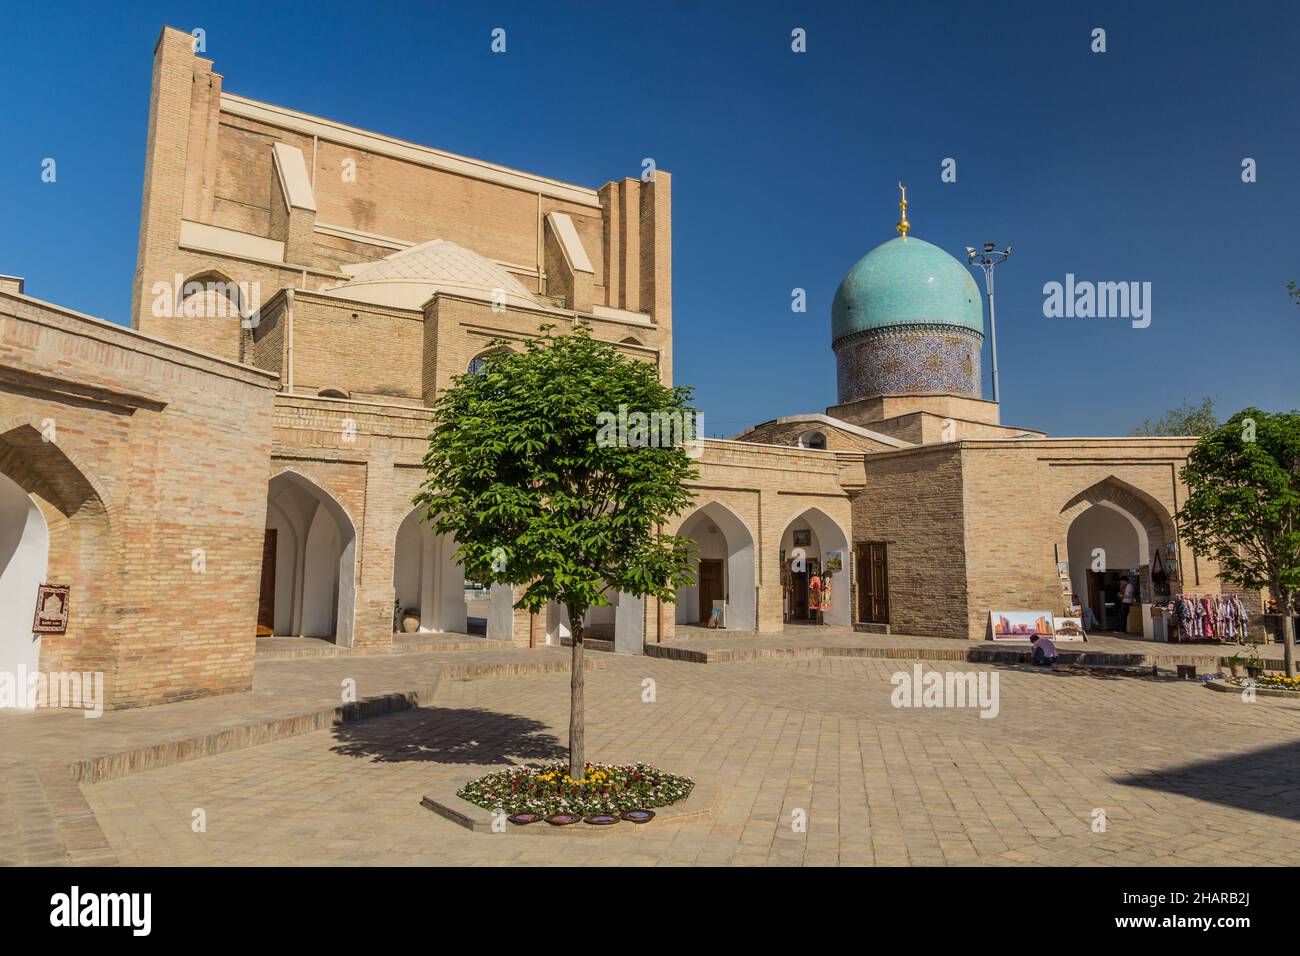 TACHKENT, OUZBÉKISTAN - 4 MAI 2018 : cour de Barak Khan Madrasa, partie de l'ensemble Hazrati Imom à Tachkent, Ouzbékistan Banque D'Images